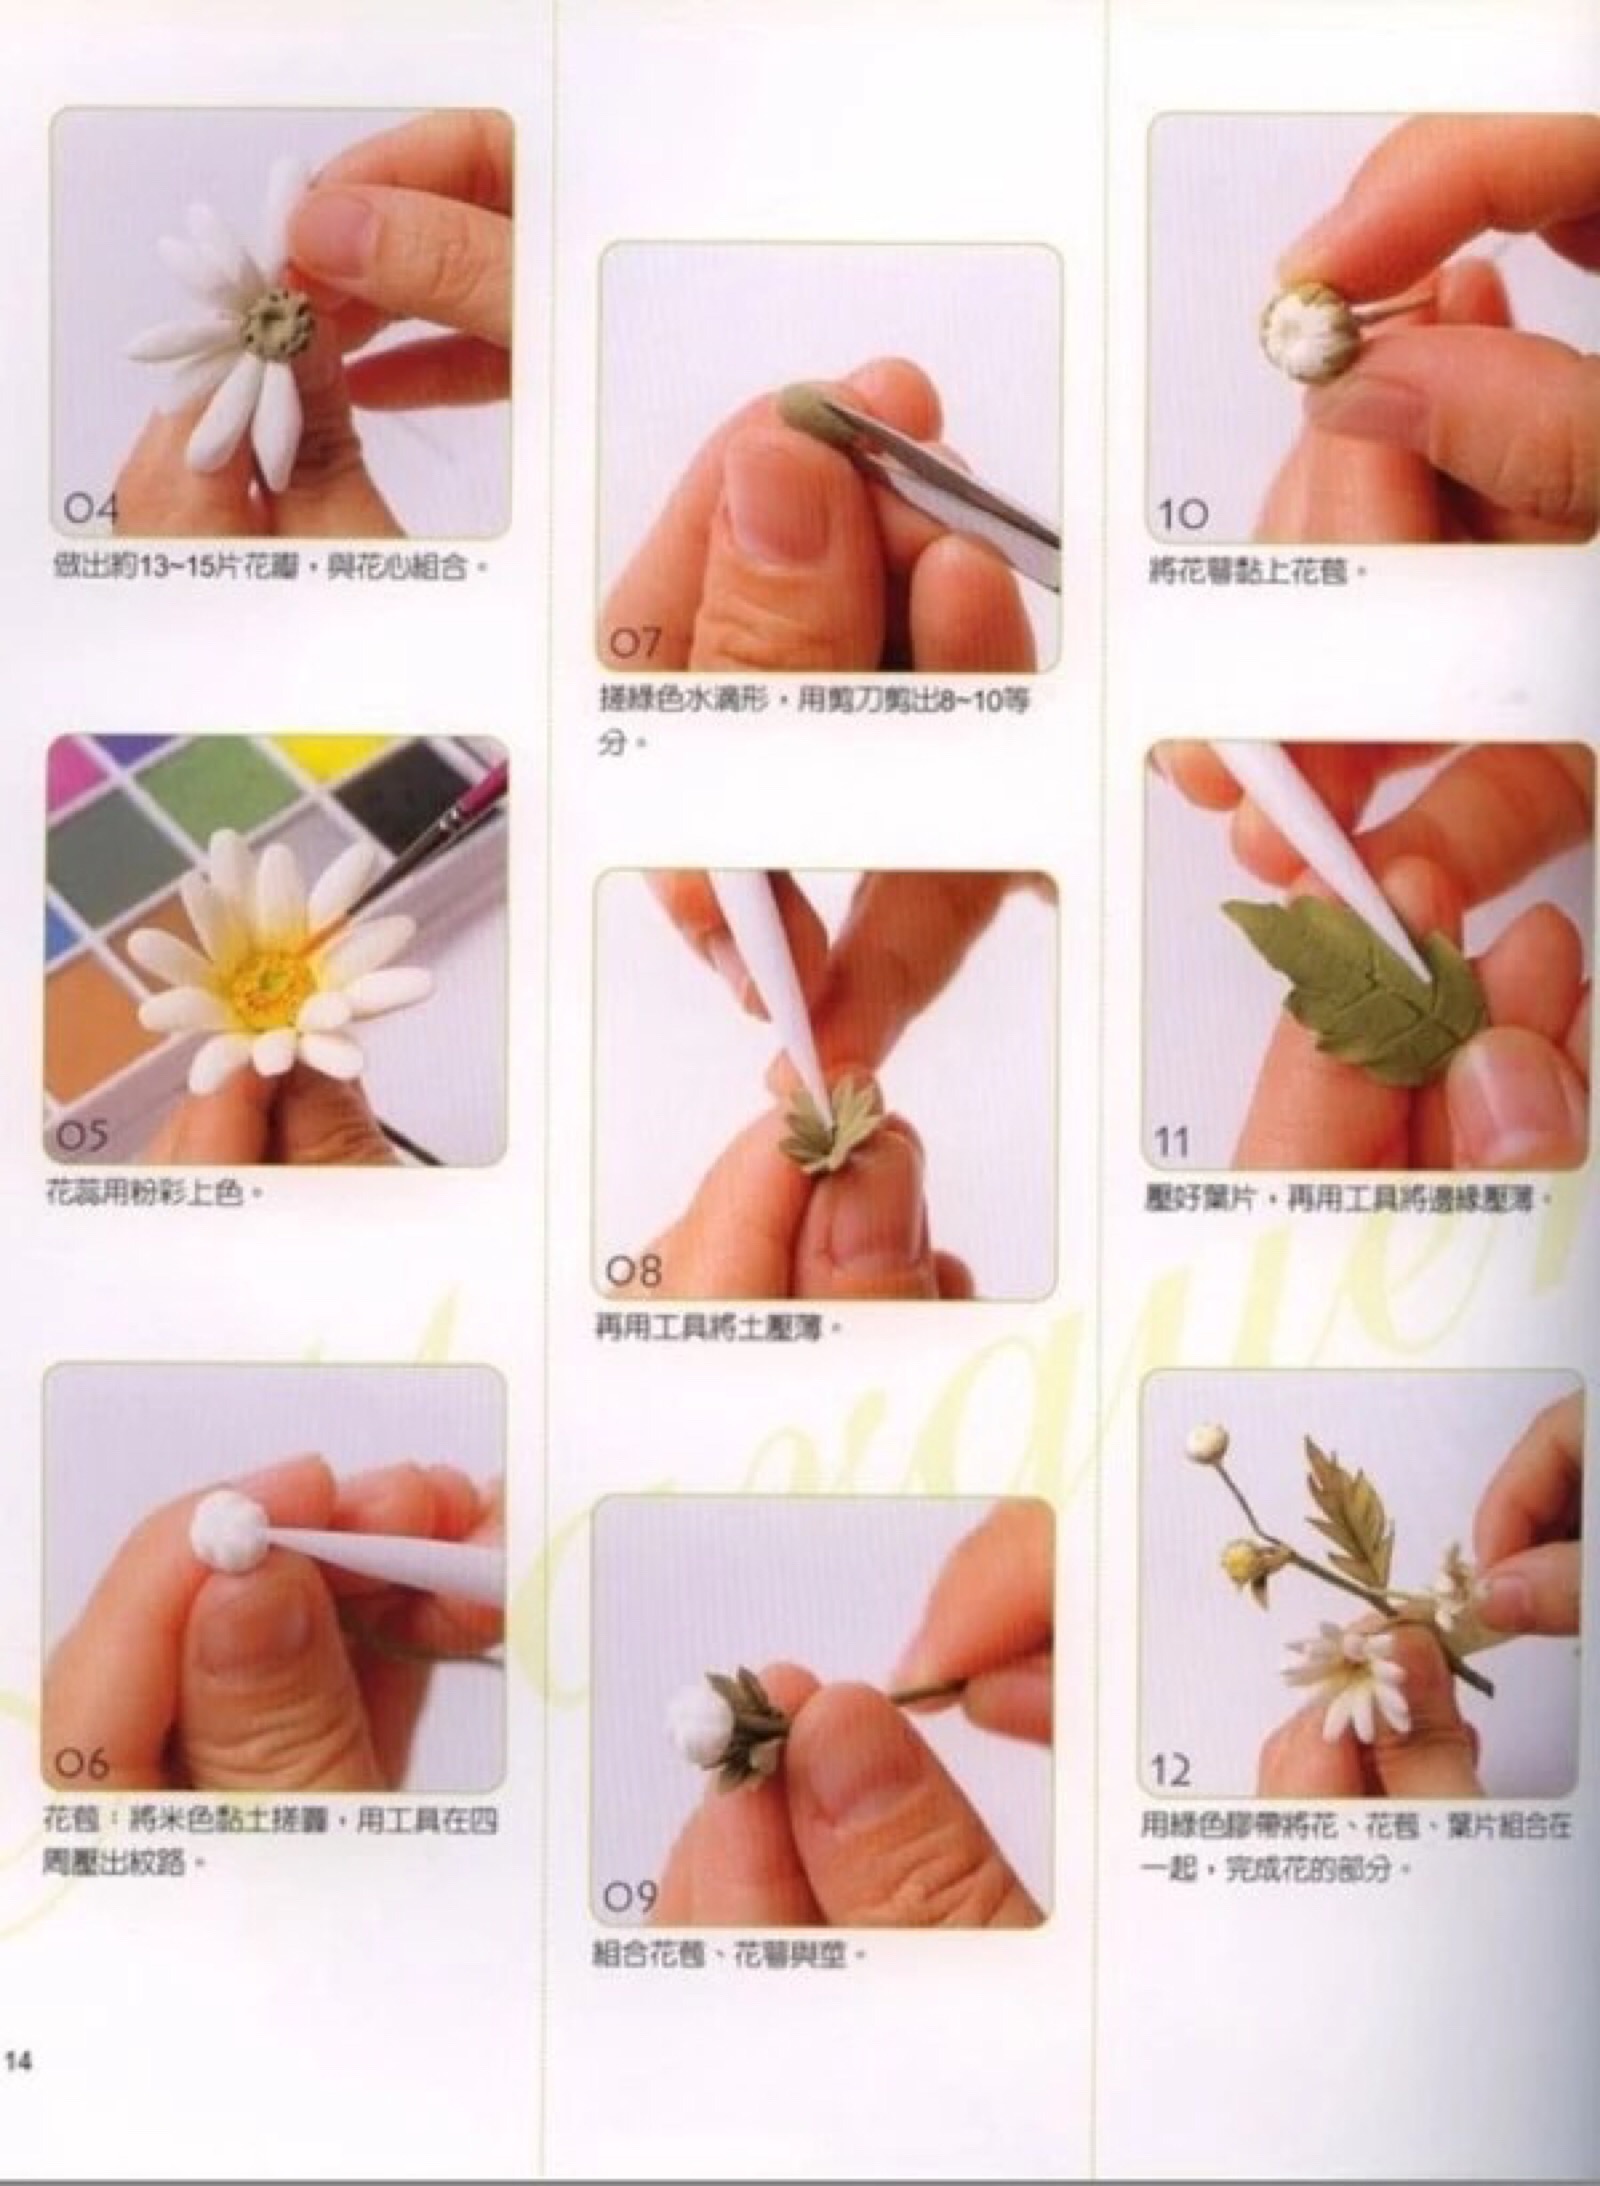 黏土花朵的制作方法图片